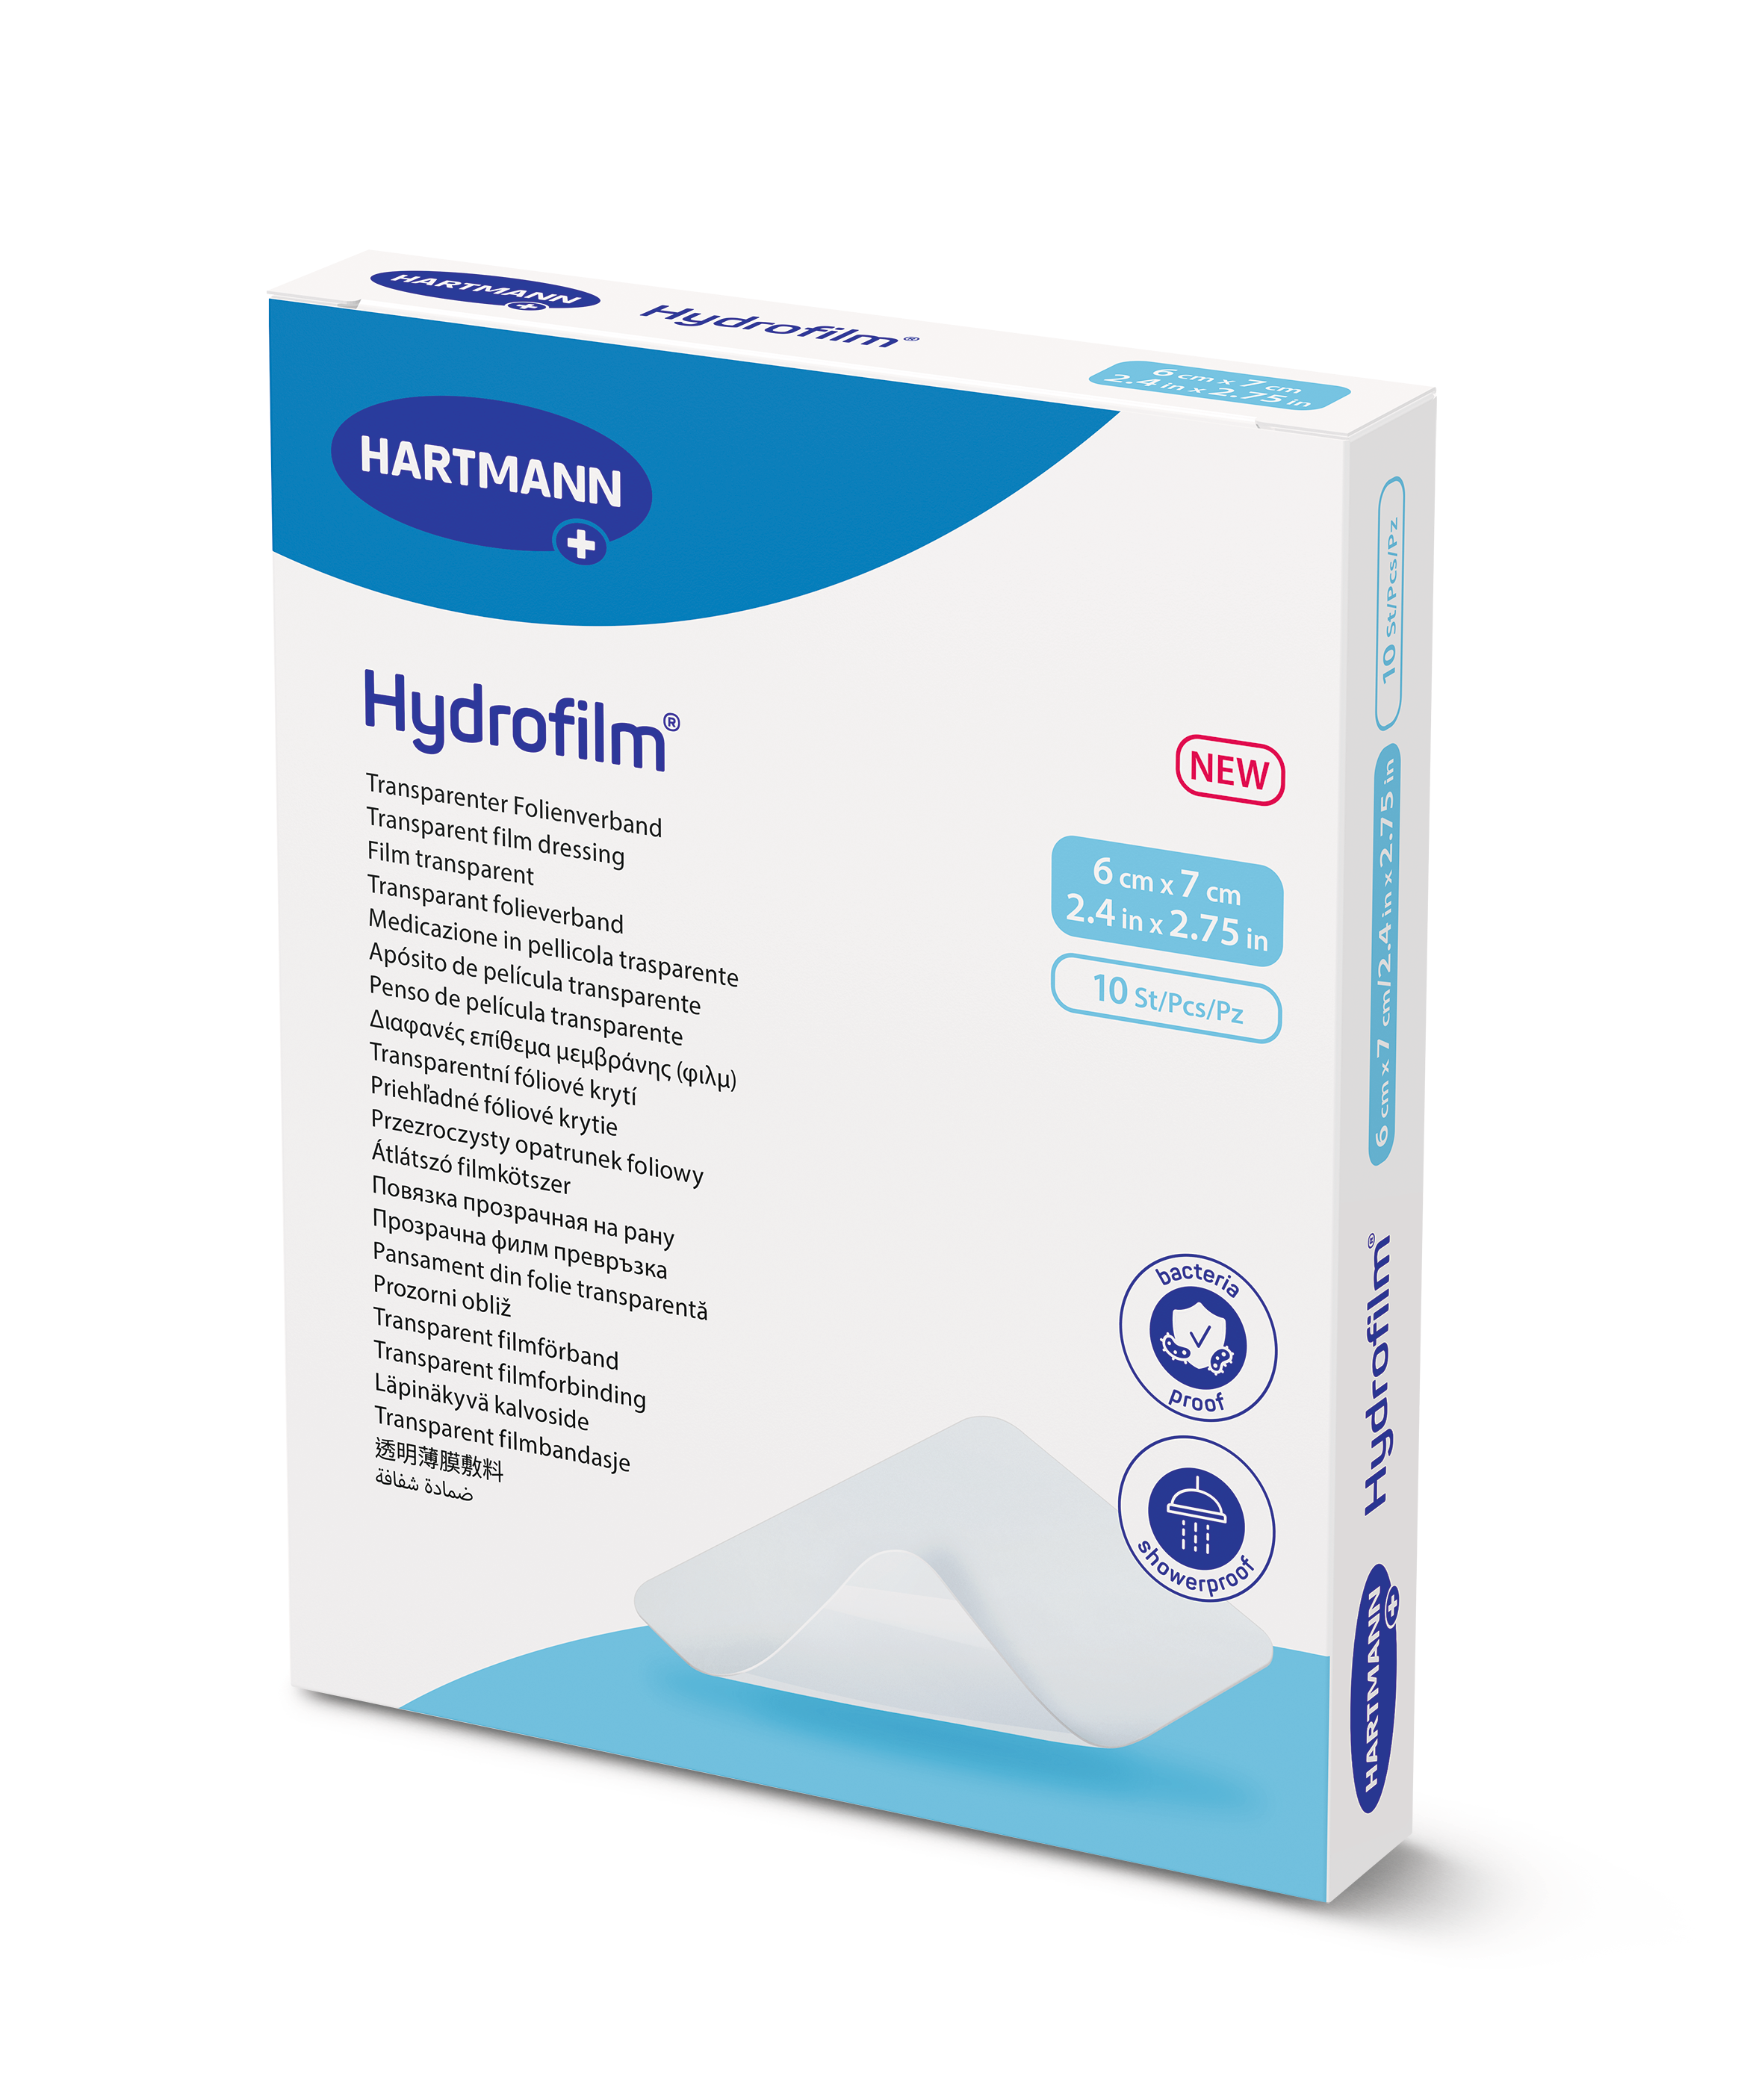 Hydrofilm produkt Hartmann